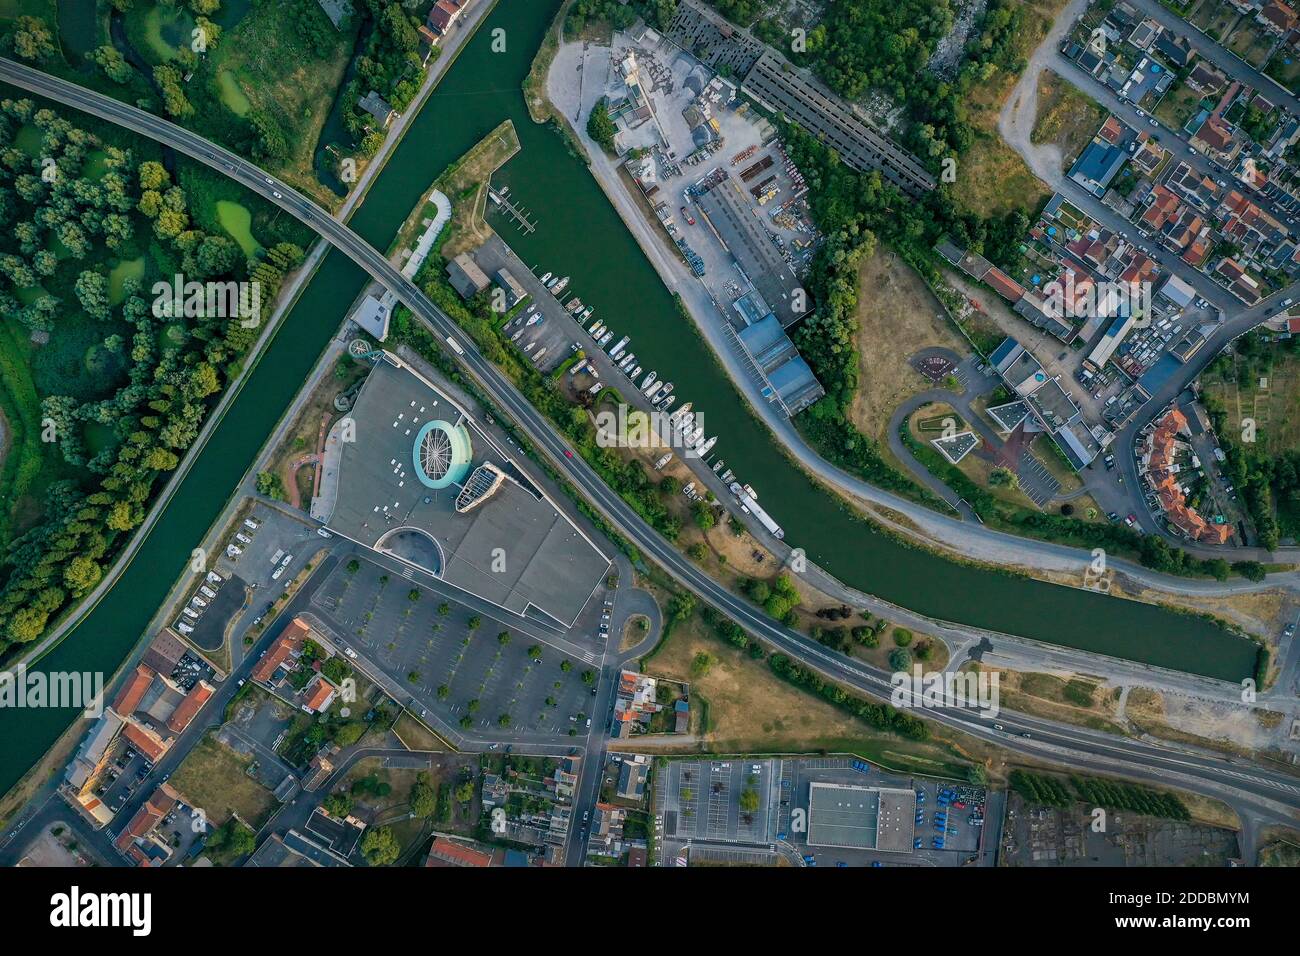 France, Aisne, Saint-Quentin, Aerial view of Canal de Saint-Quentin Stock Photo